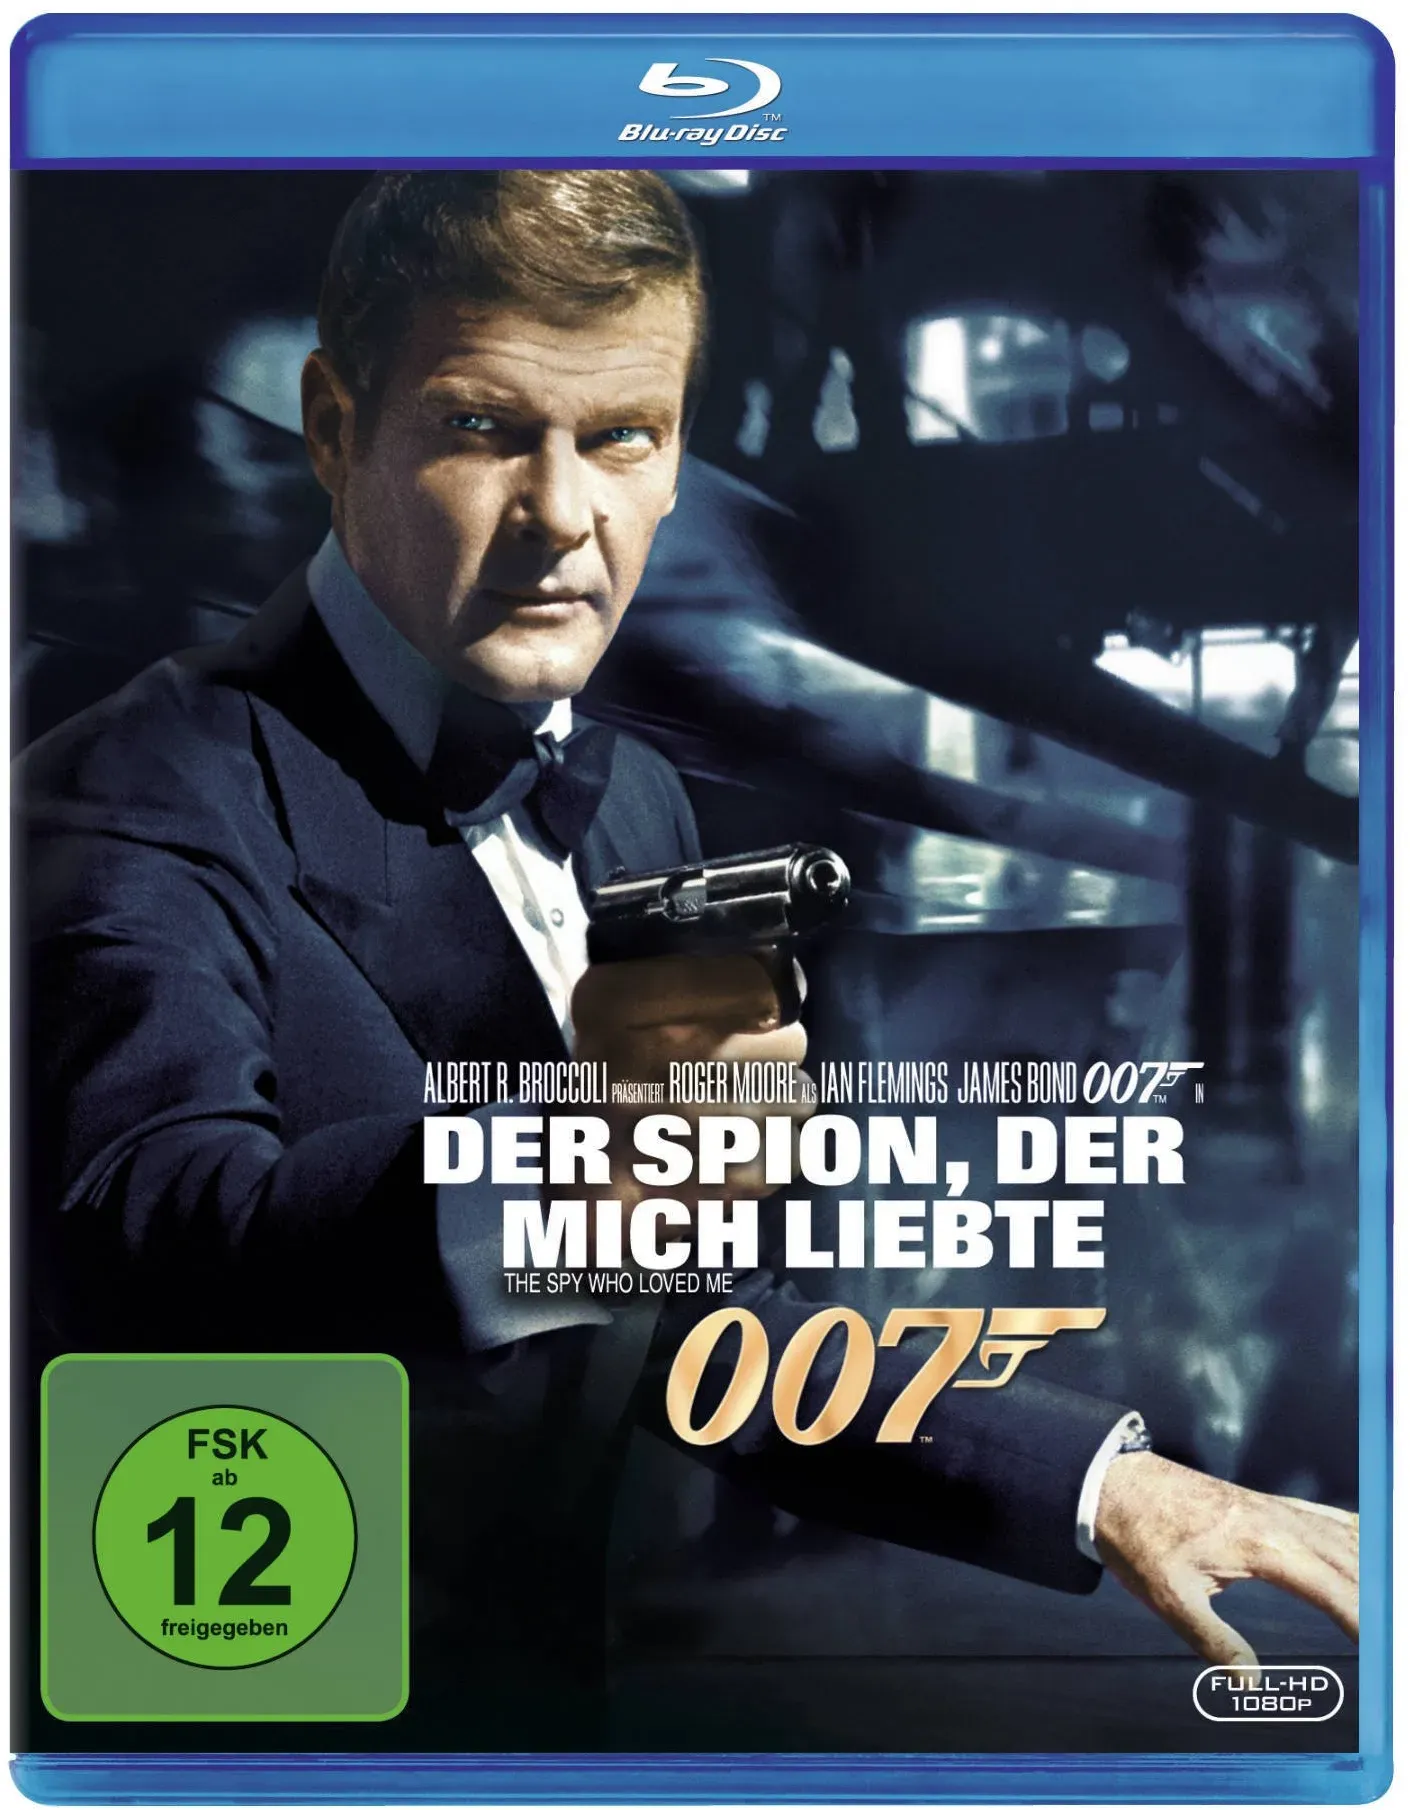 James Bond - Der Spion, der mich liebte [Blu-ray] (Neu differenzbesteuert)